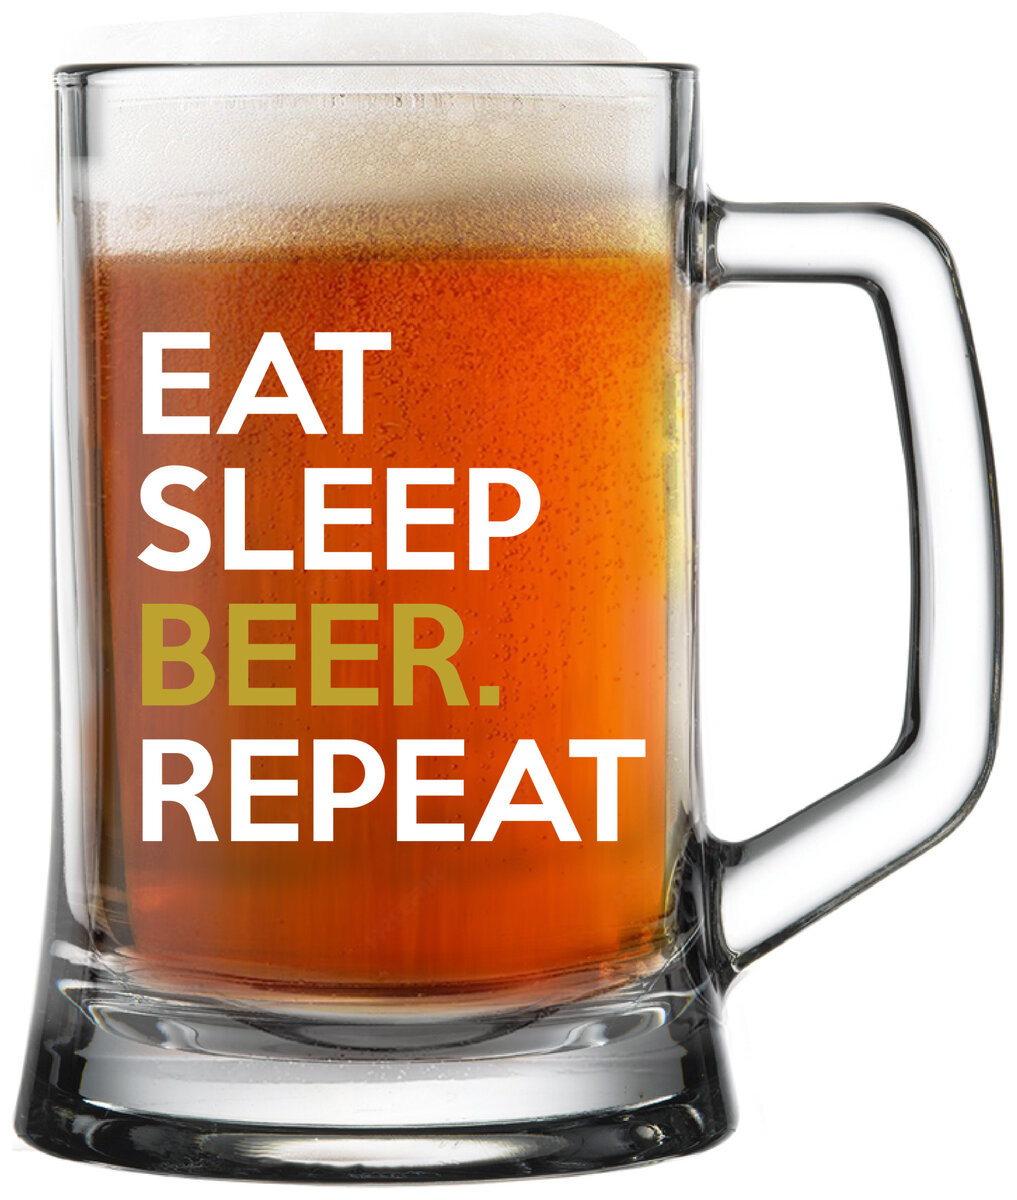 EAT SLEEP BEER. REPEAT - pivní sklenička 0,5 l